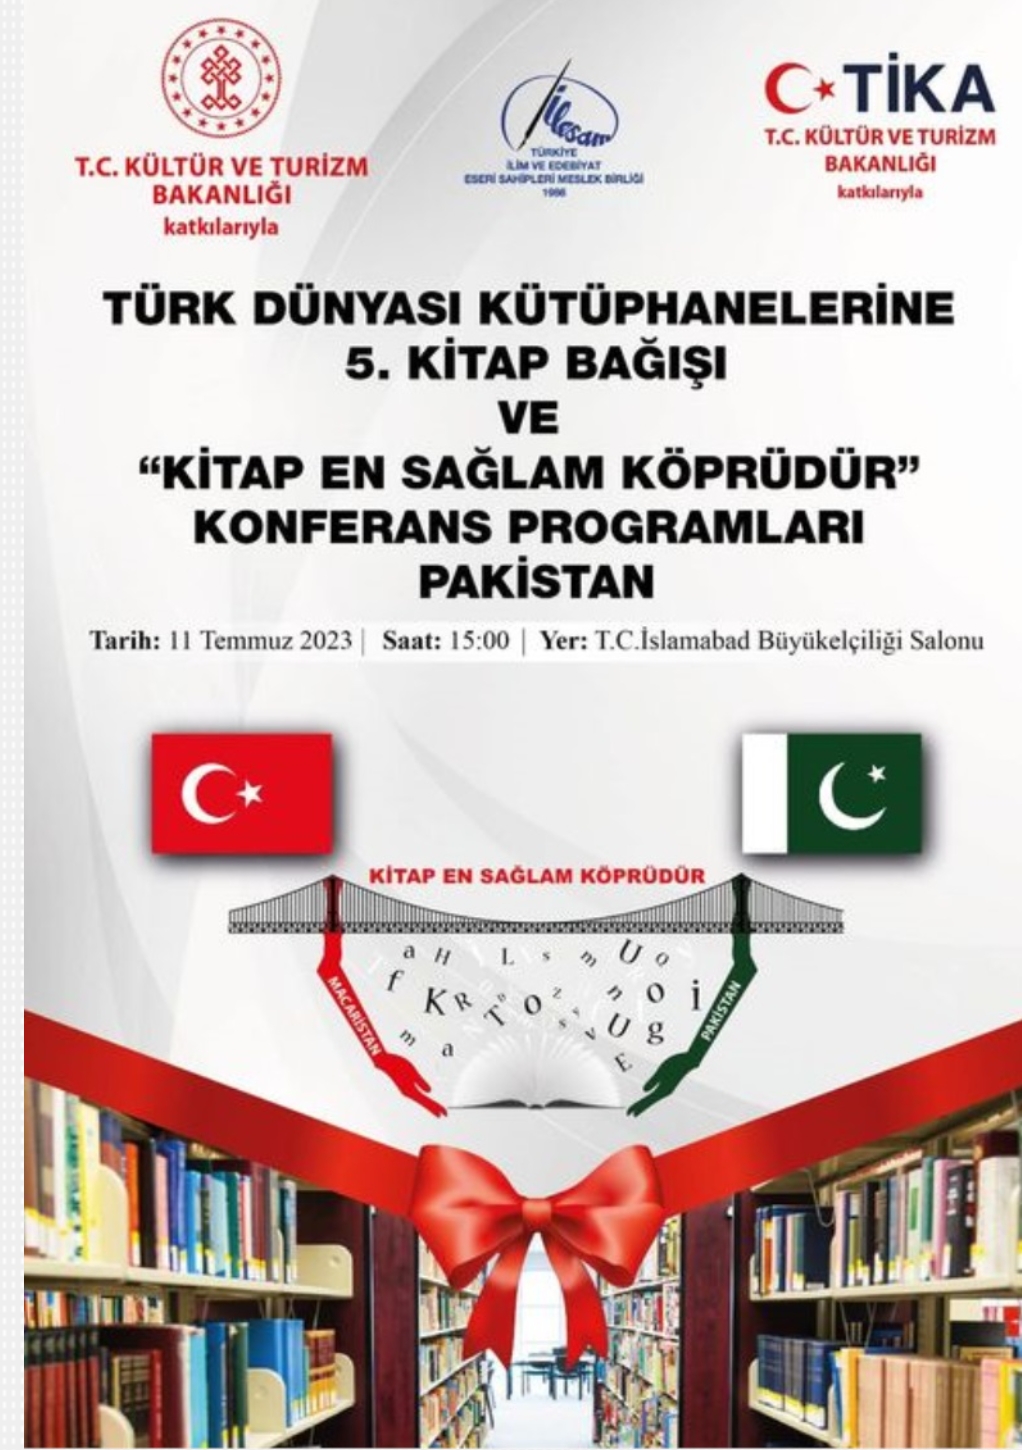 İLESAM, Türk Dünyası Ülke Kütüphanelerine Kitap Bağışı Projesi Kapsamında Pakistan’a 10.000 Kitap Bağışladı.